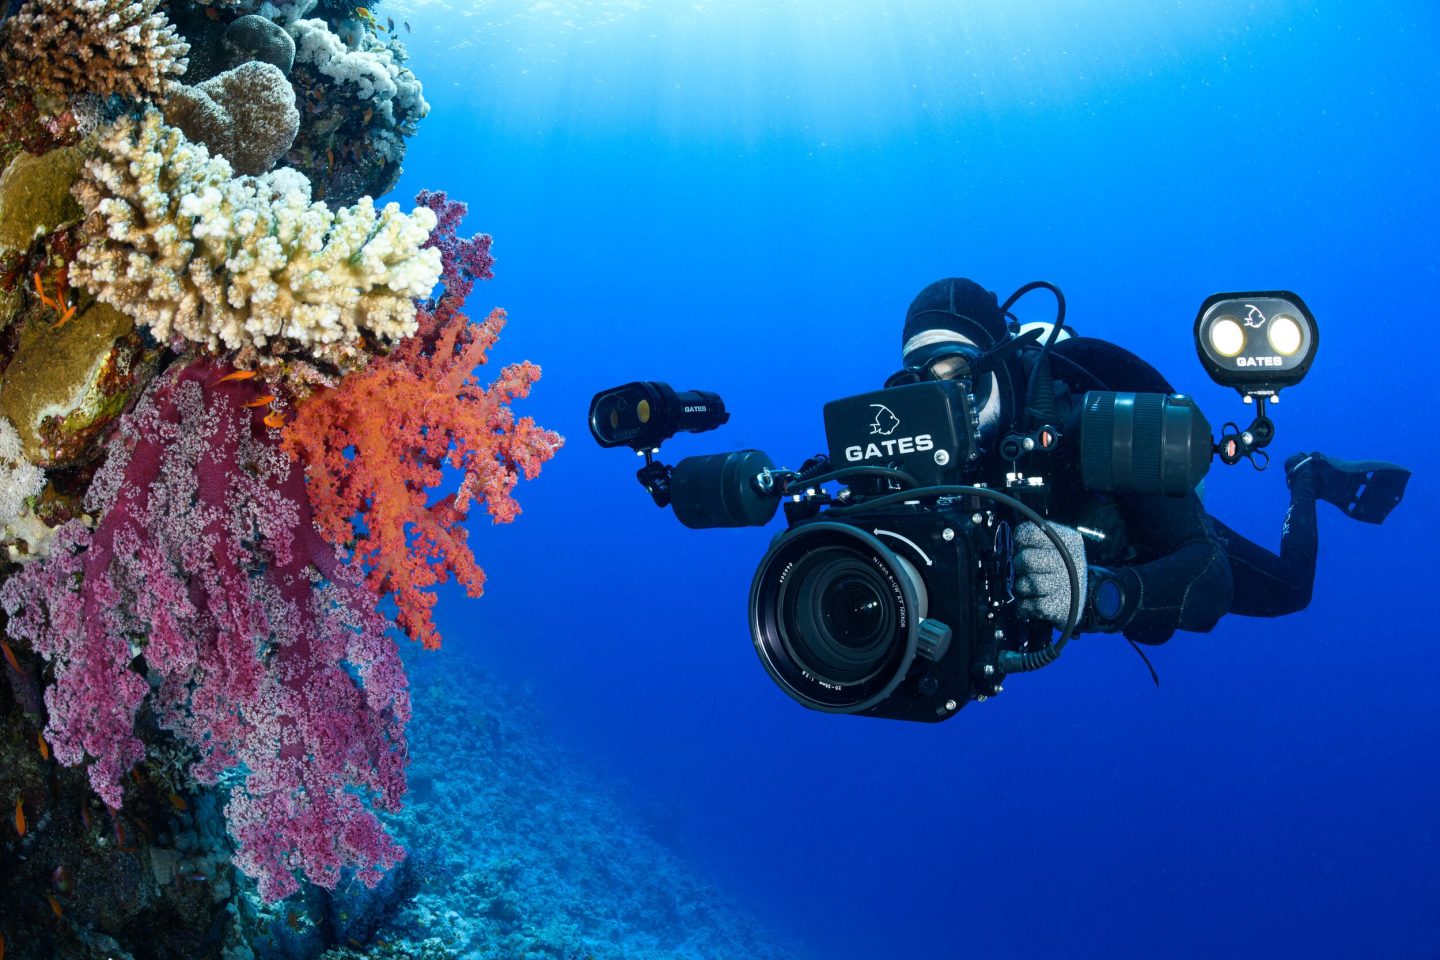 باحثون صنعوا كاميرا لاسلكية لتصوير أعماق المحيطات دون الحاجة إلى أي نوع من البطاريات